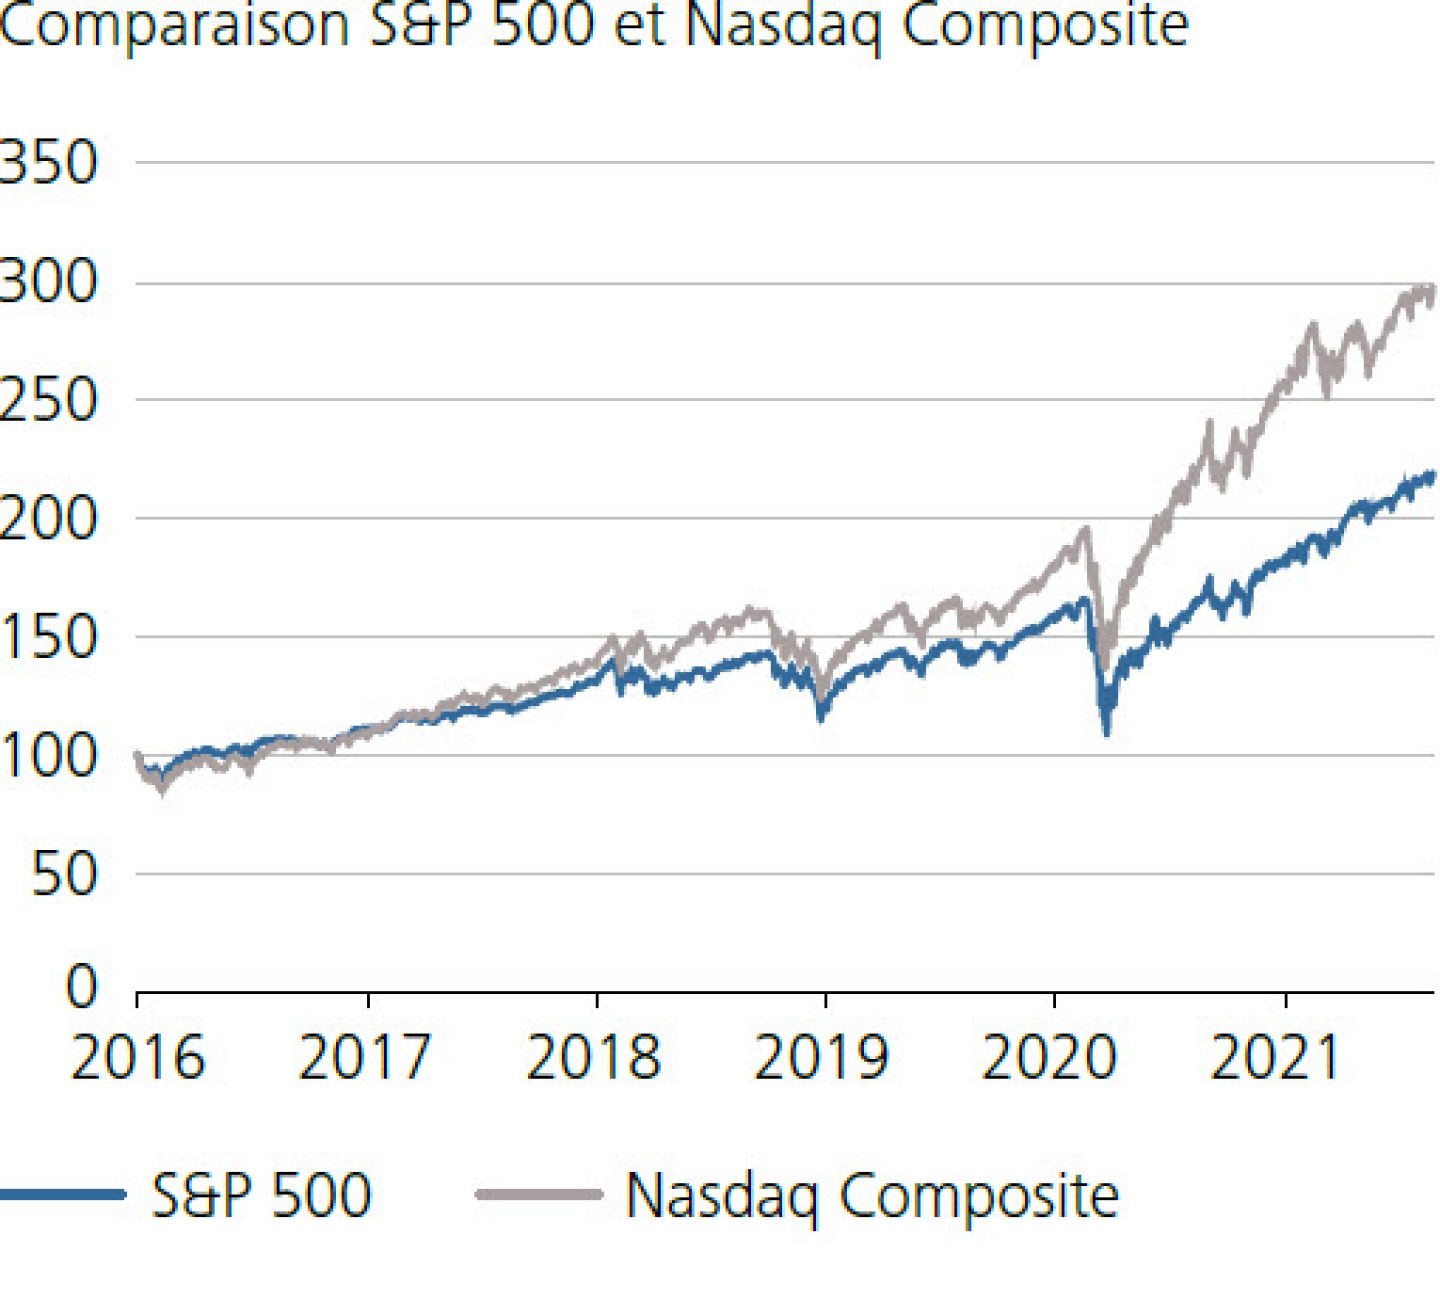 Comparaison S&P 500 et Nasdaq Composite